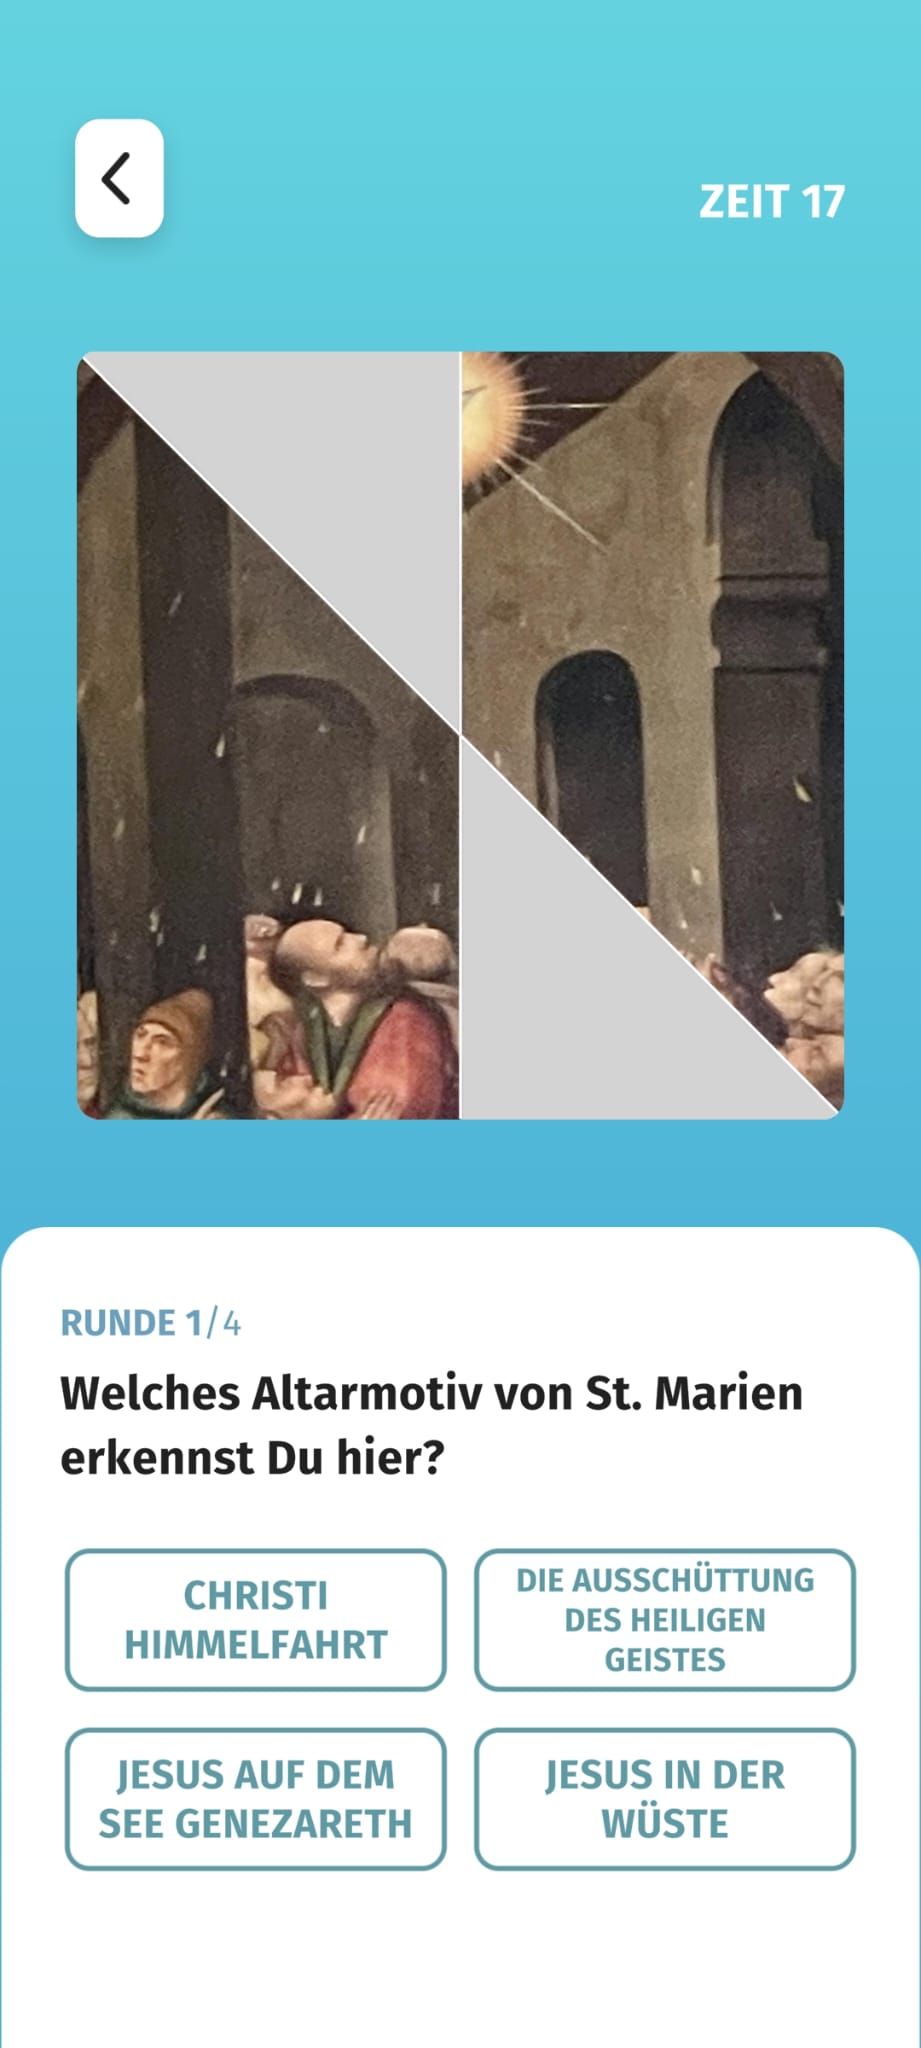 Viele Quizfragen haben einen religiös-historischen Hintergrund. / Foto: Screenshot aus der App "Entdecke Osnabrück"